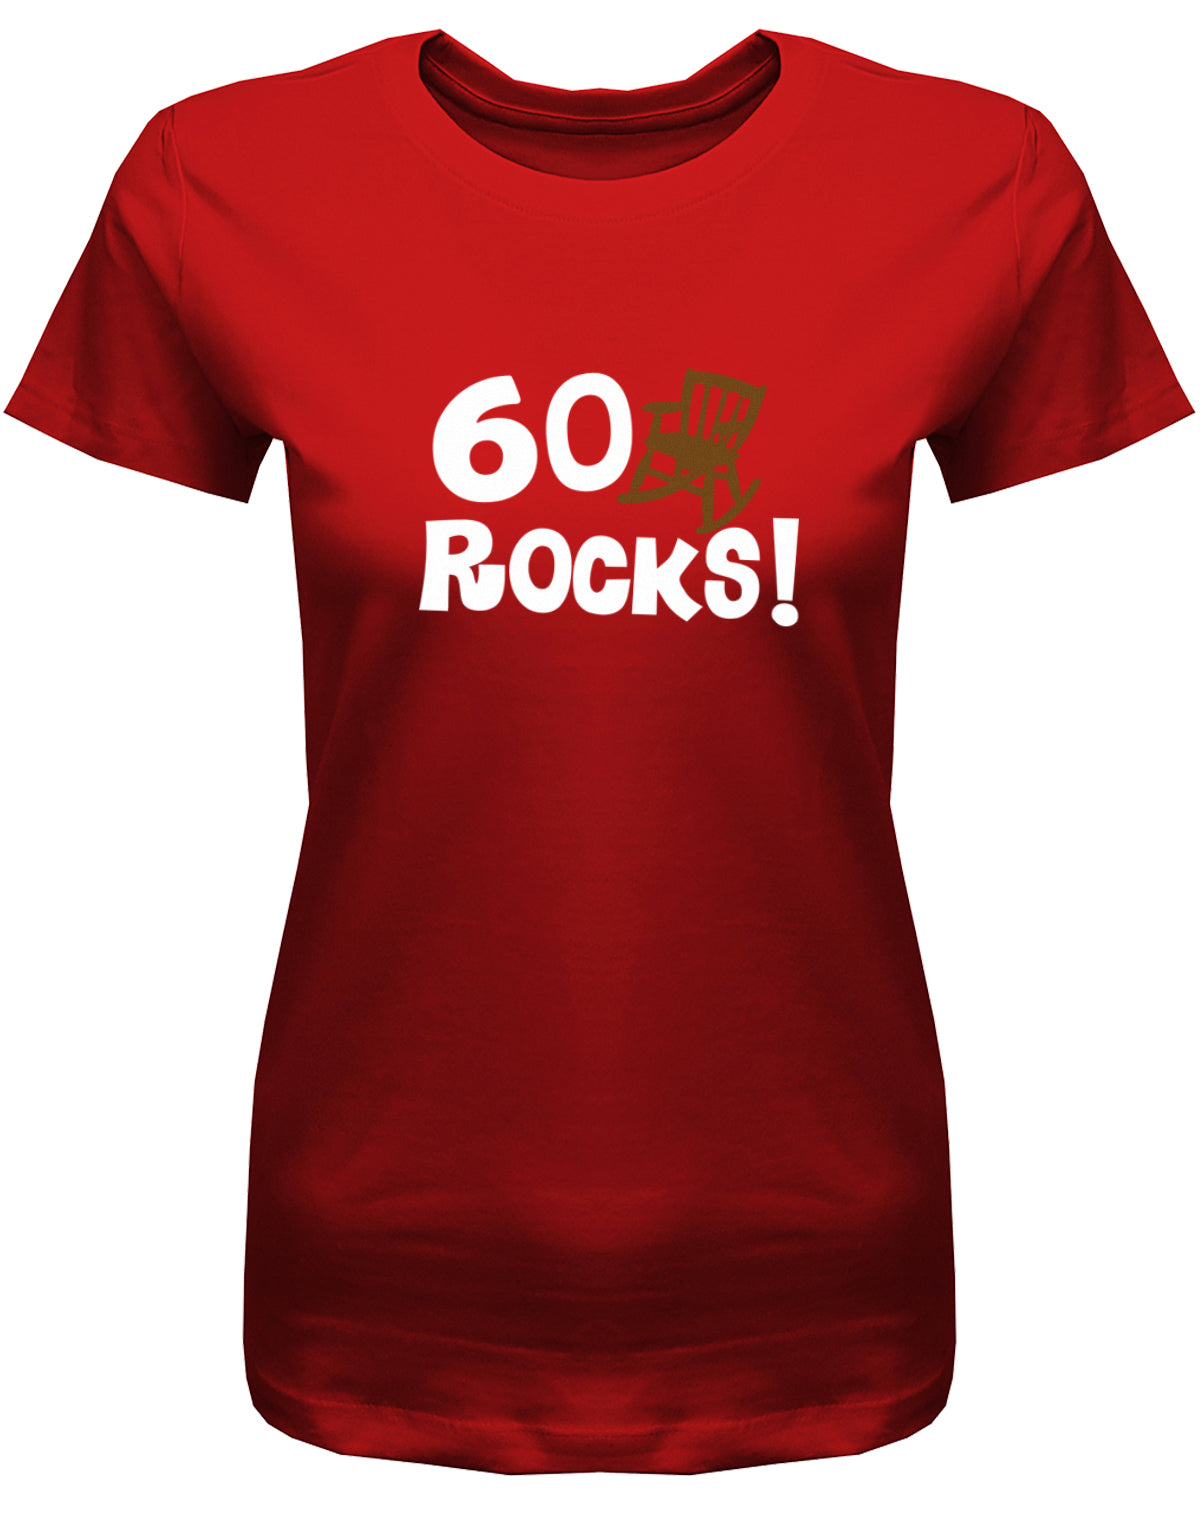 Lustiges T-Shirt zum 60 Geburtstag für die Frau Bedruckt mit 60 Rocks Schaukelstuhl. Rot